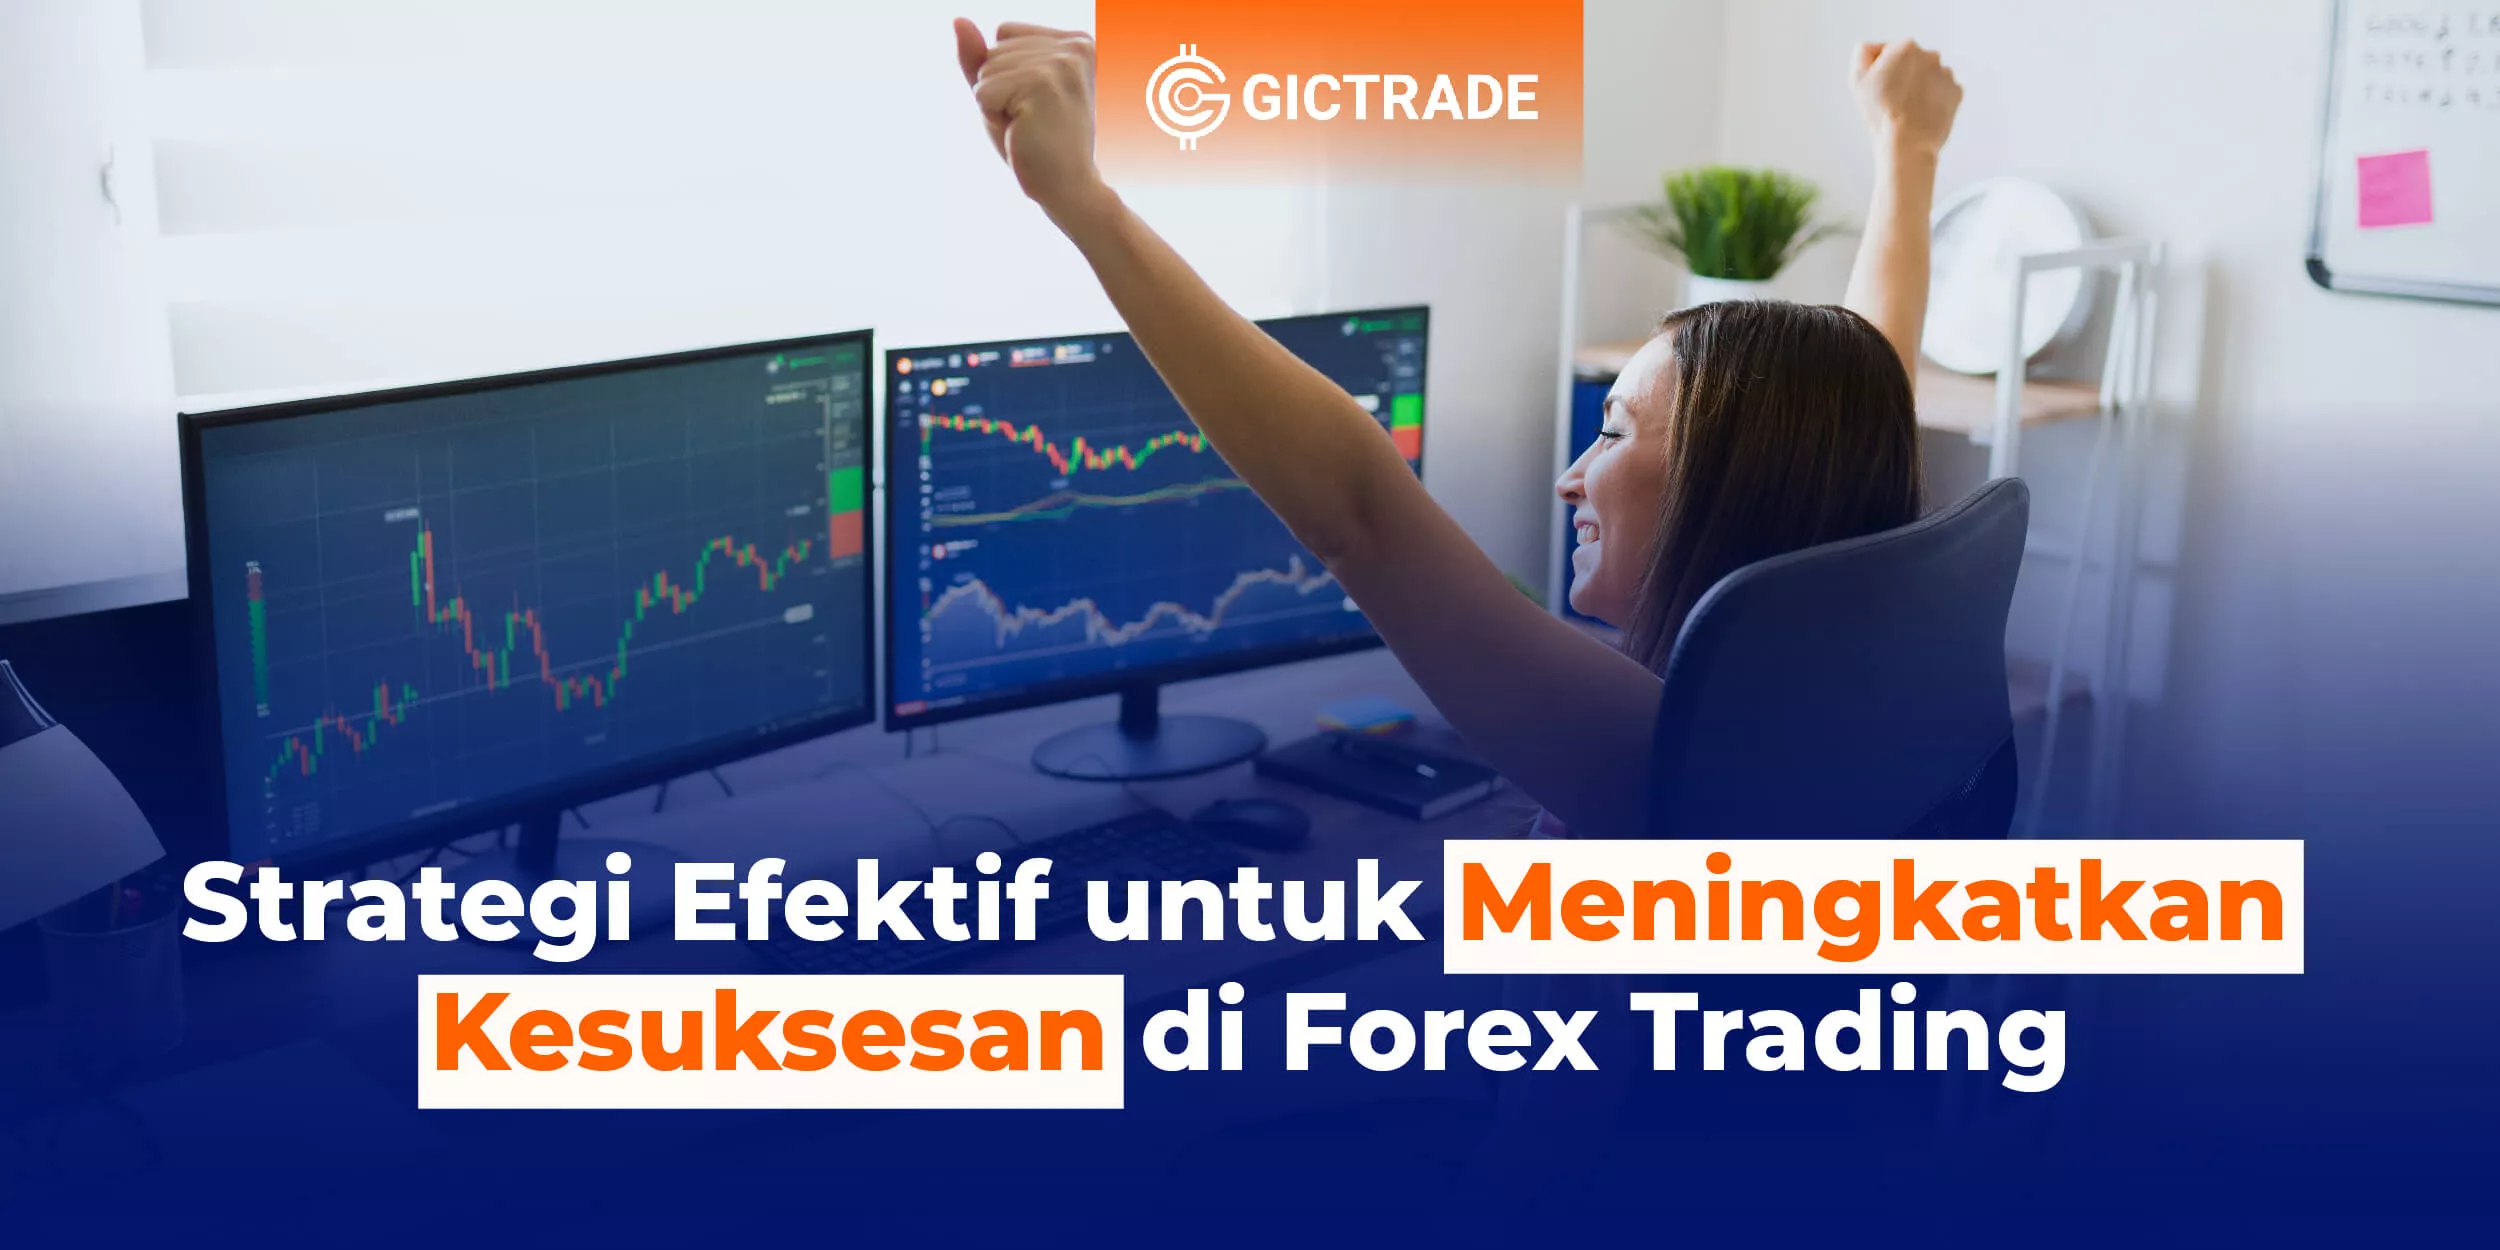 Strategi Efektif Meningkatkan Kesuksesan di Forex Trading